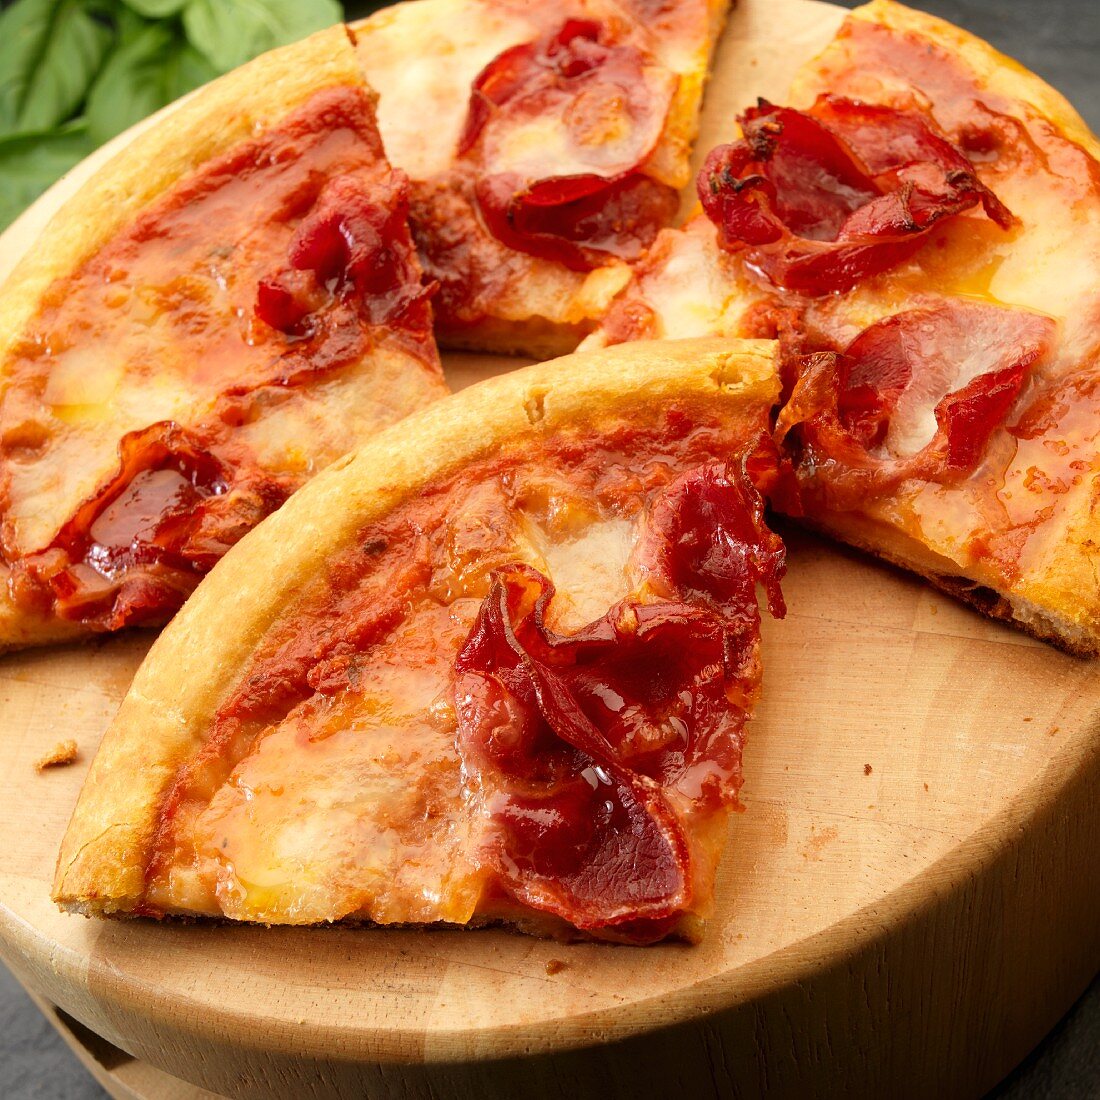 Sliced Pizza with tomato sauce, Capicola and mozzarella